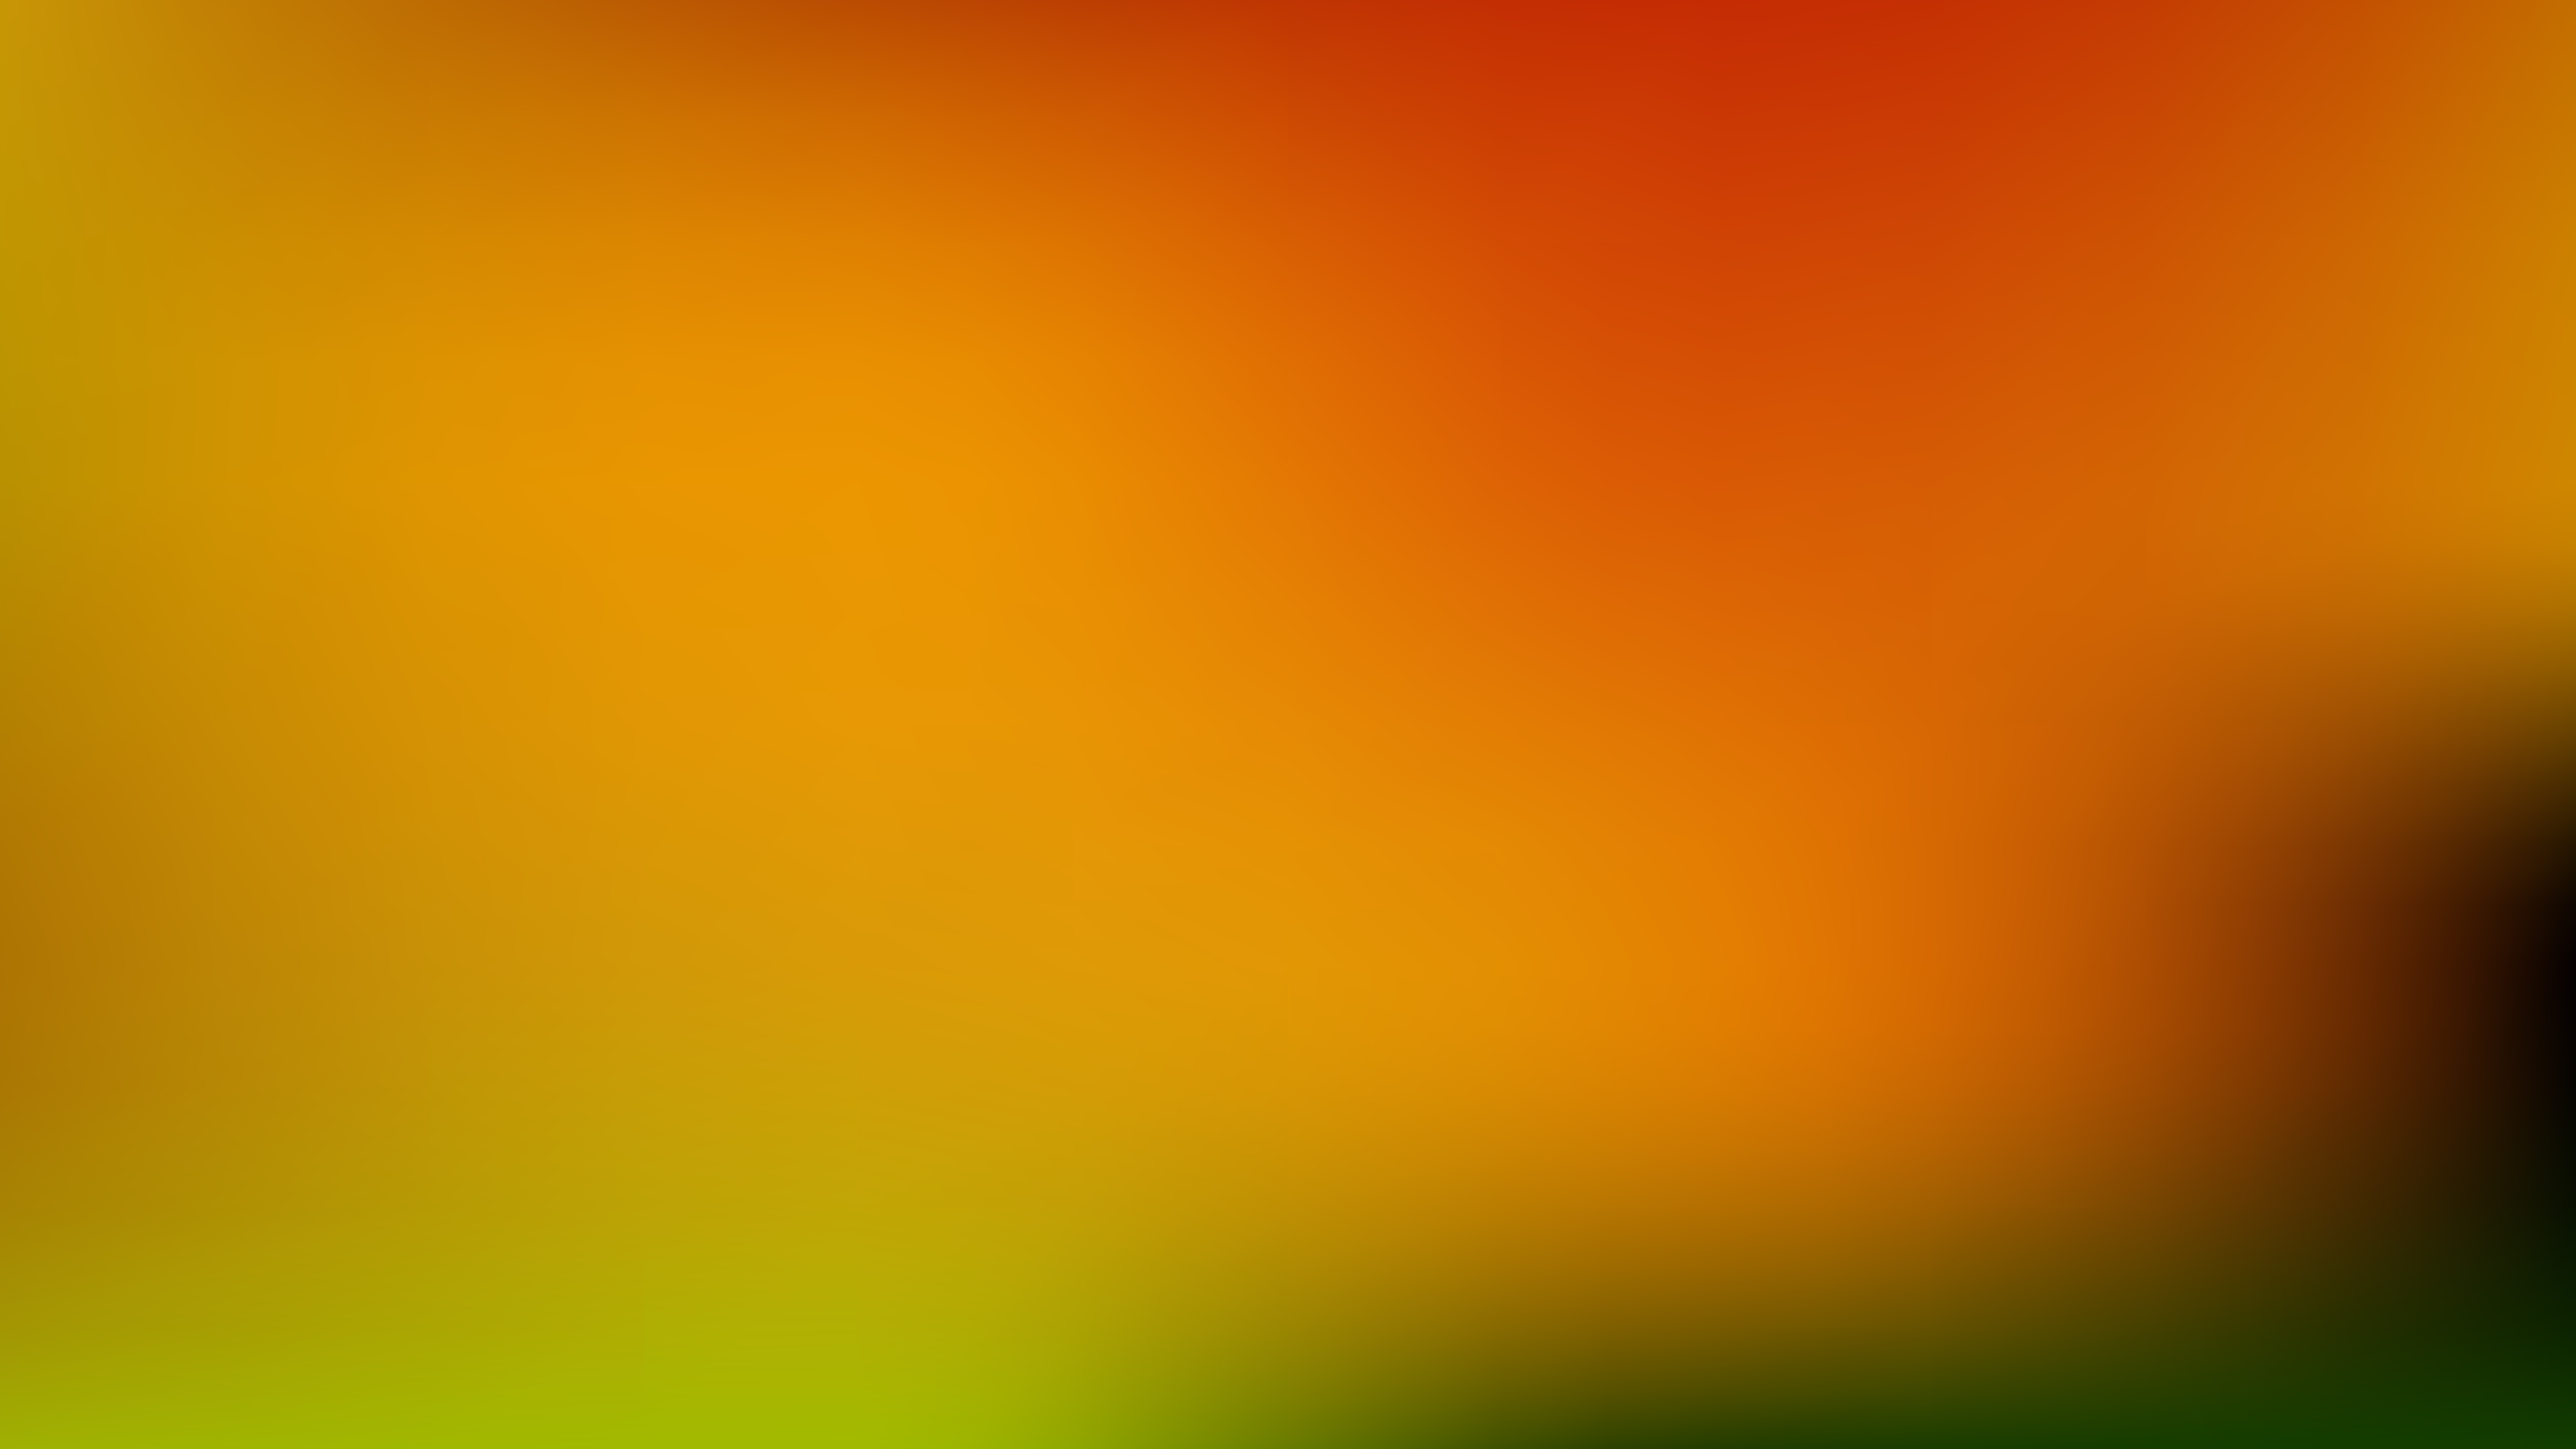 Free Orange and Green Blurred Background